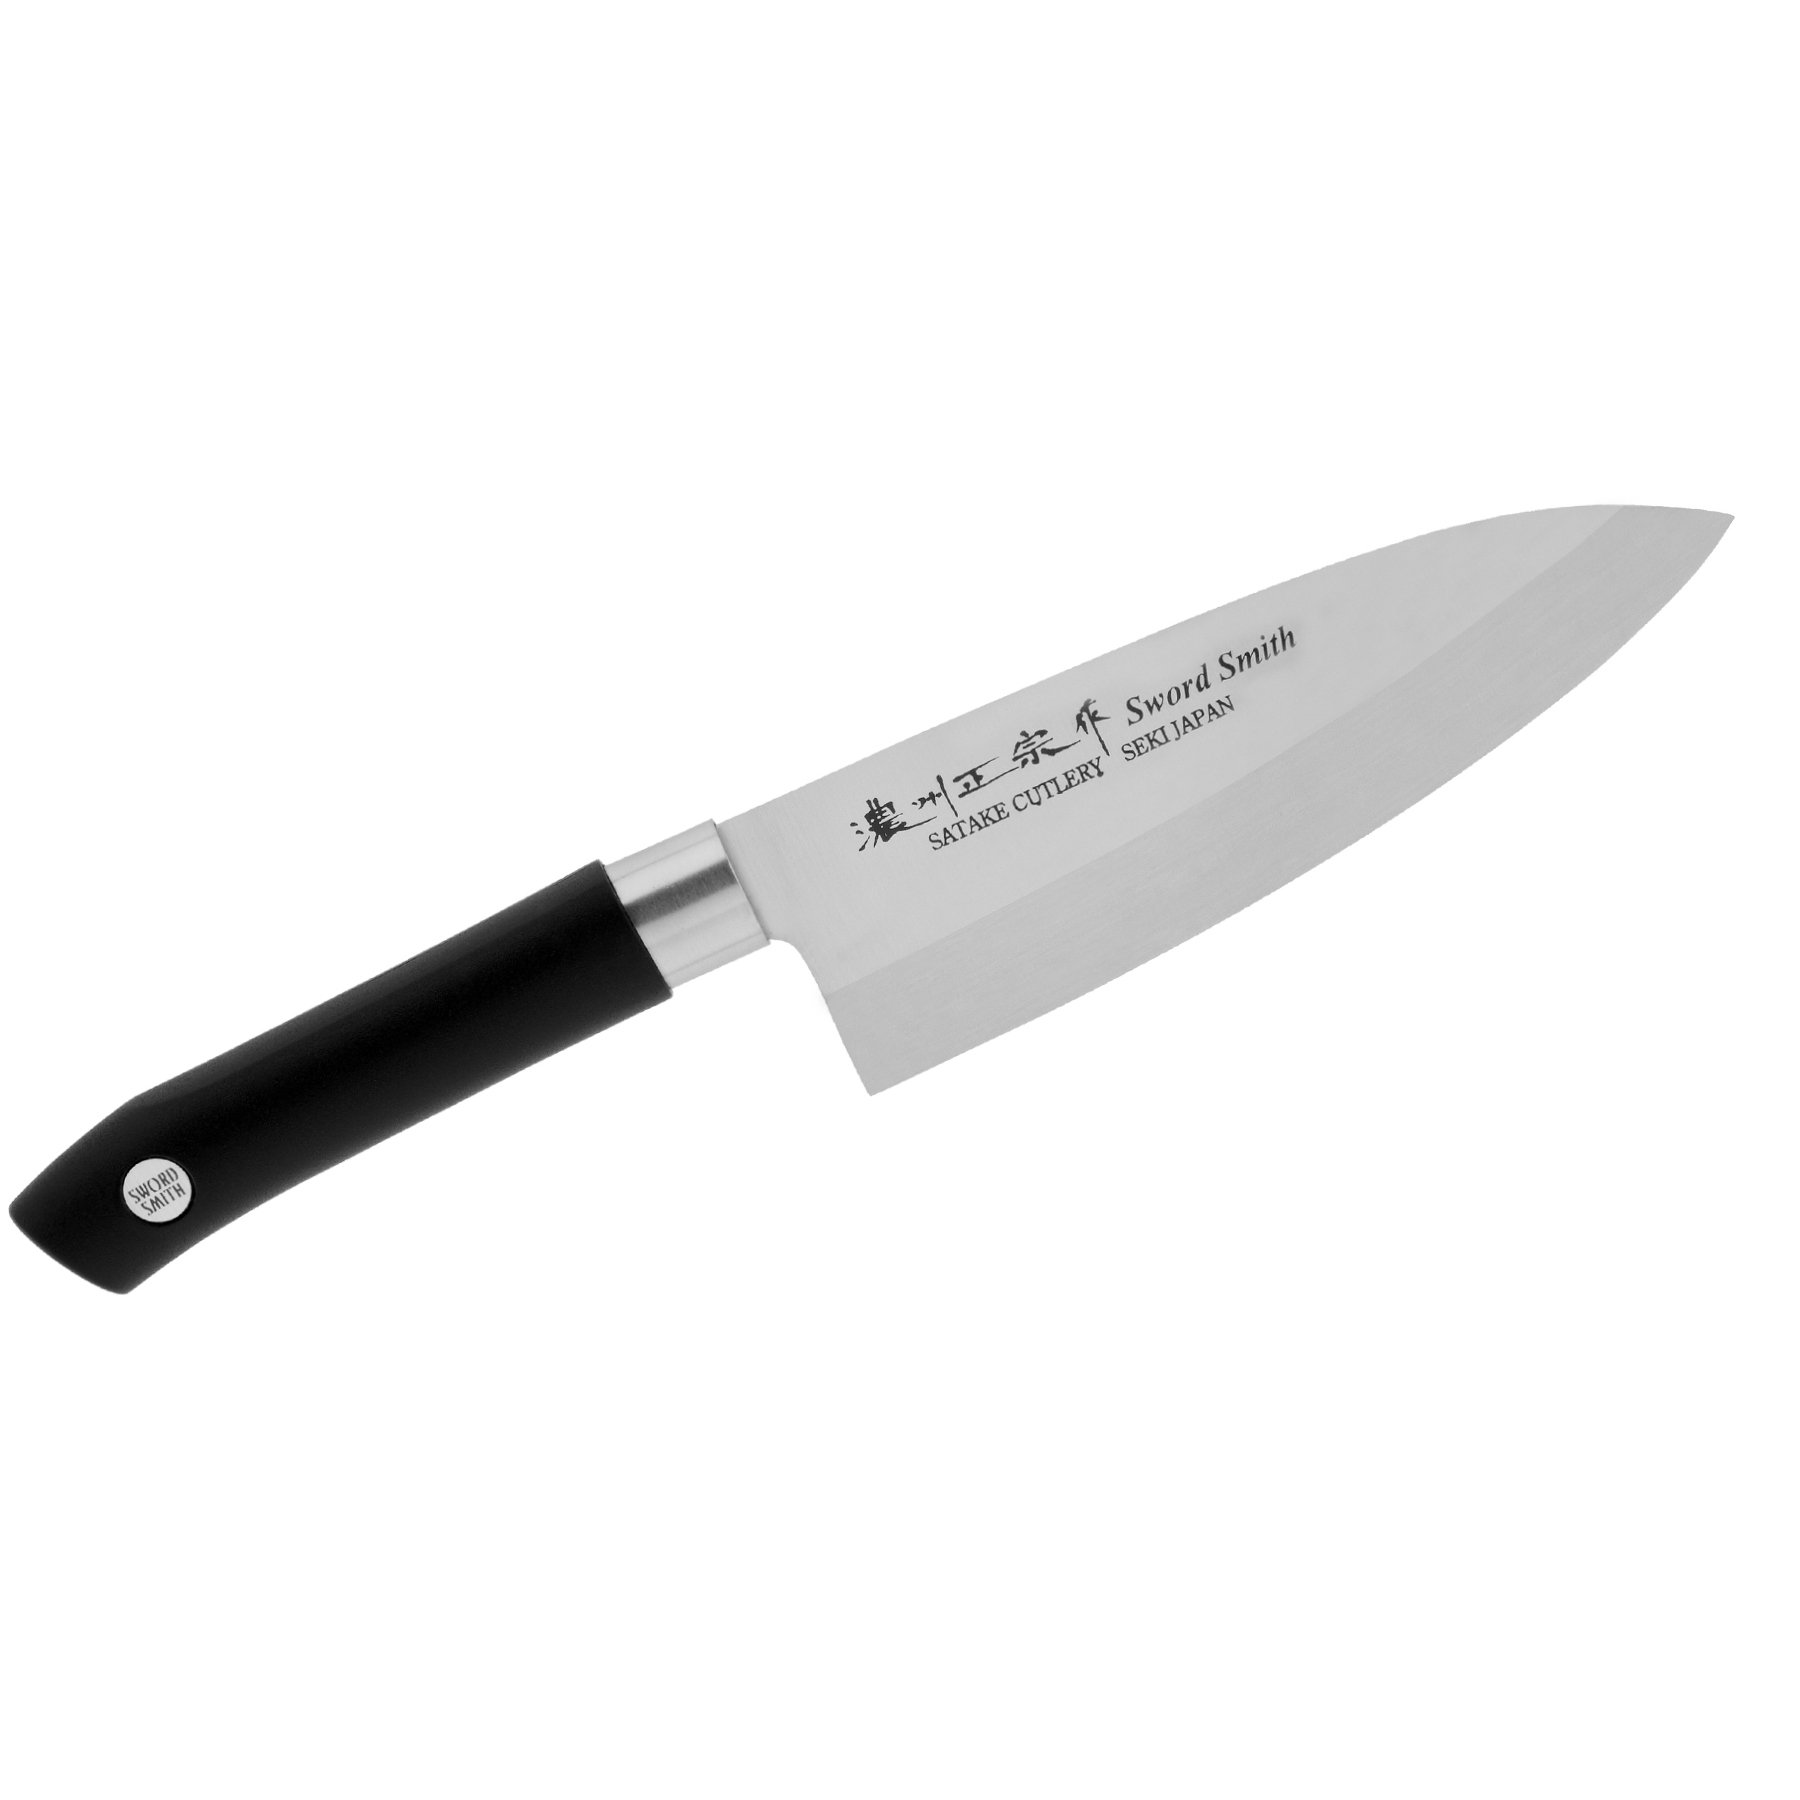 SATAKE Sword Smith 16 cm černý - nůž šéfkuchaře z nerezové oceli